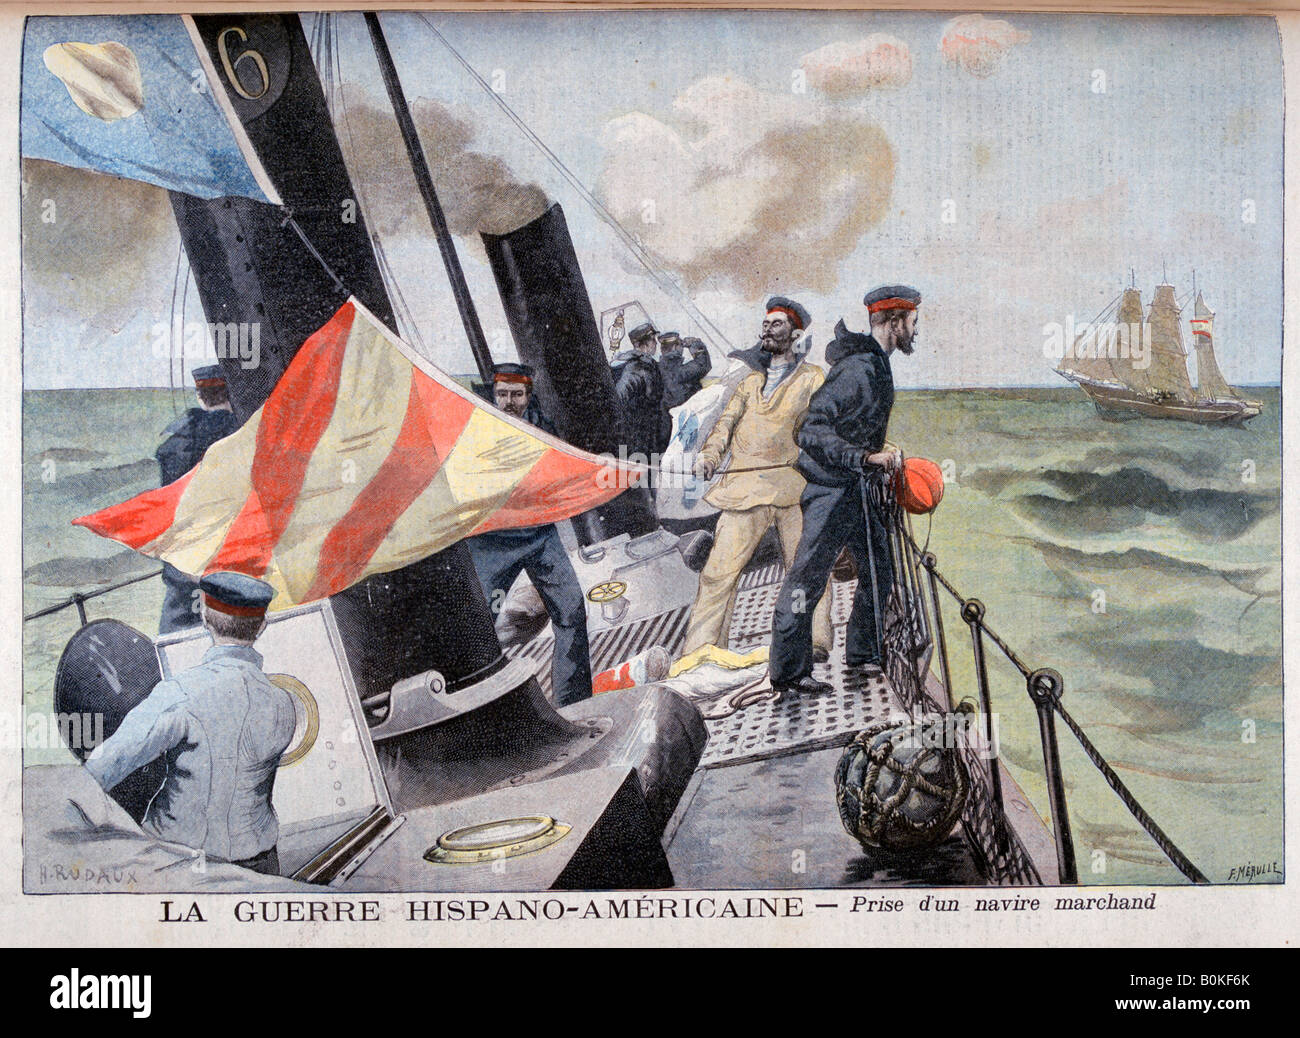 La capture d'un navire marchand, Guerre hispano-américaine, 1898. Artiste : F Meaulle Banque D'Images